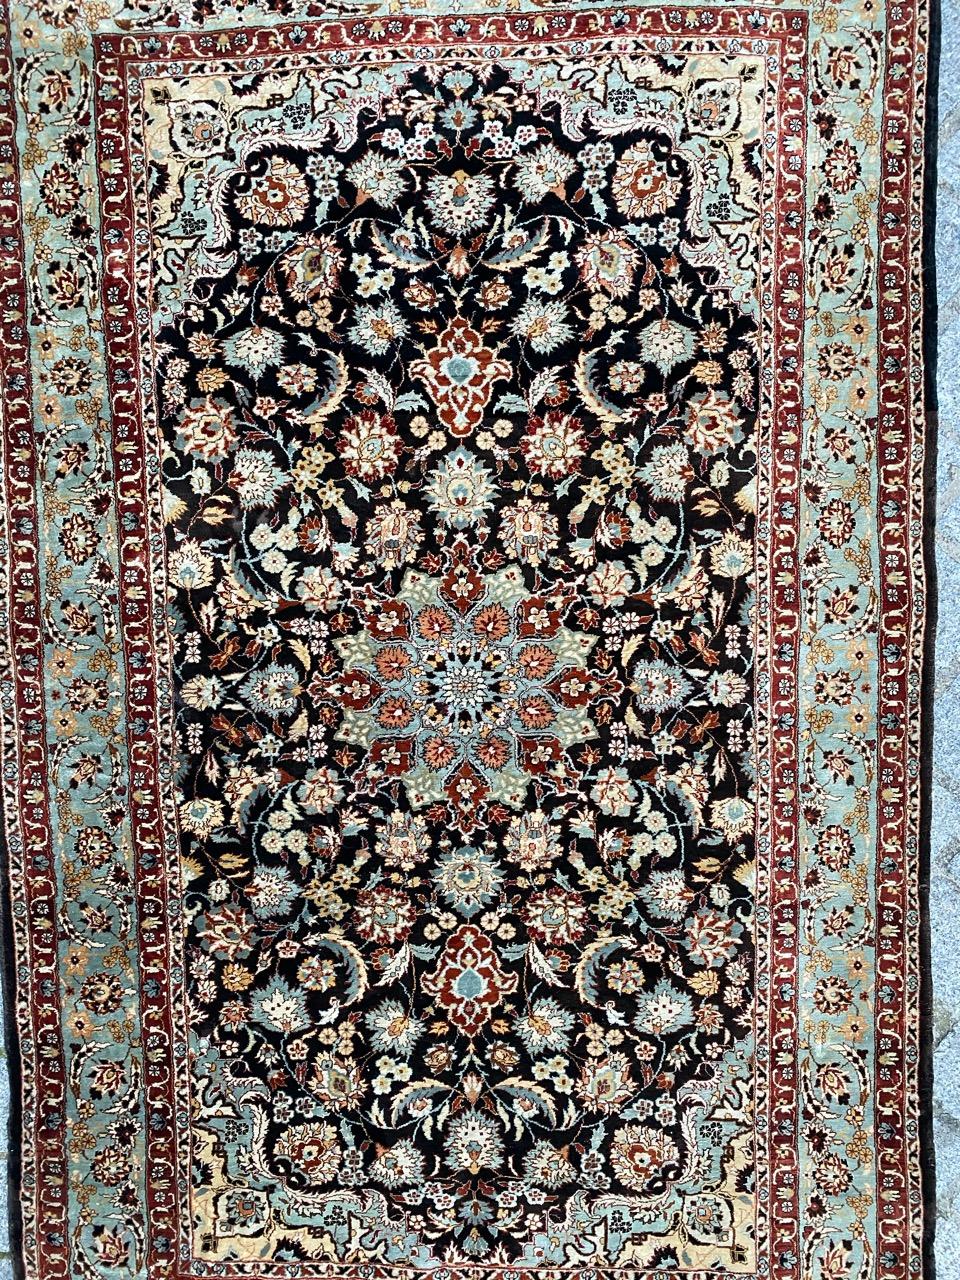 Très beau tapis en soie avec un design persan et de belles couleurs, entièrement et finement noué à la main avec du velours de soie sur une base de soie.

✨✨✨
